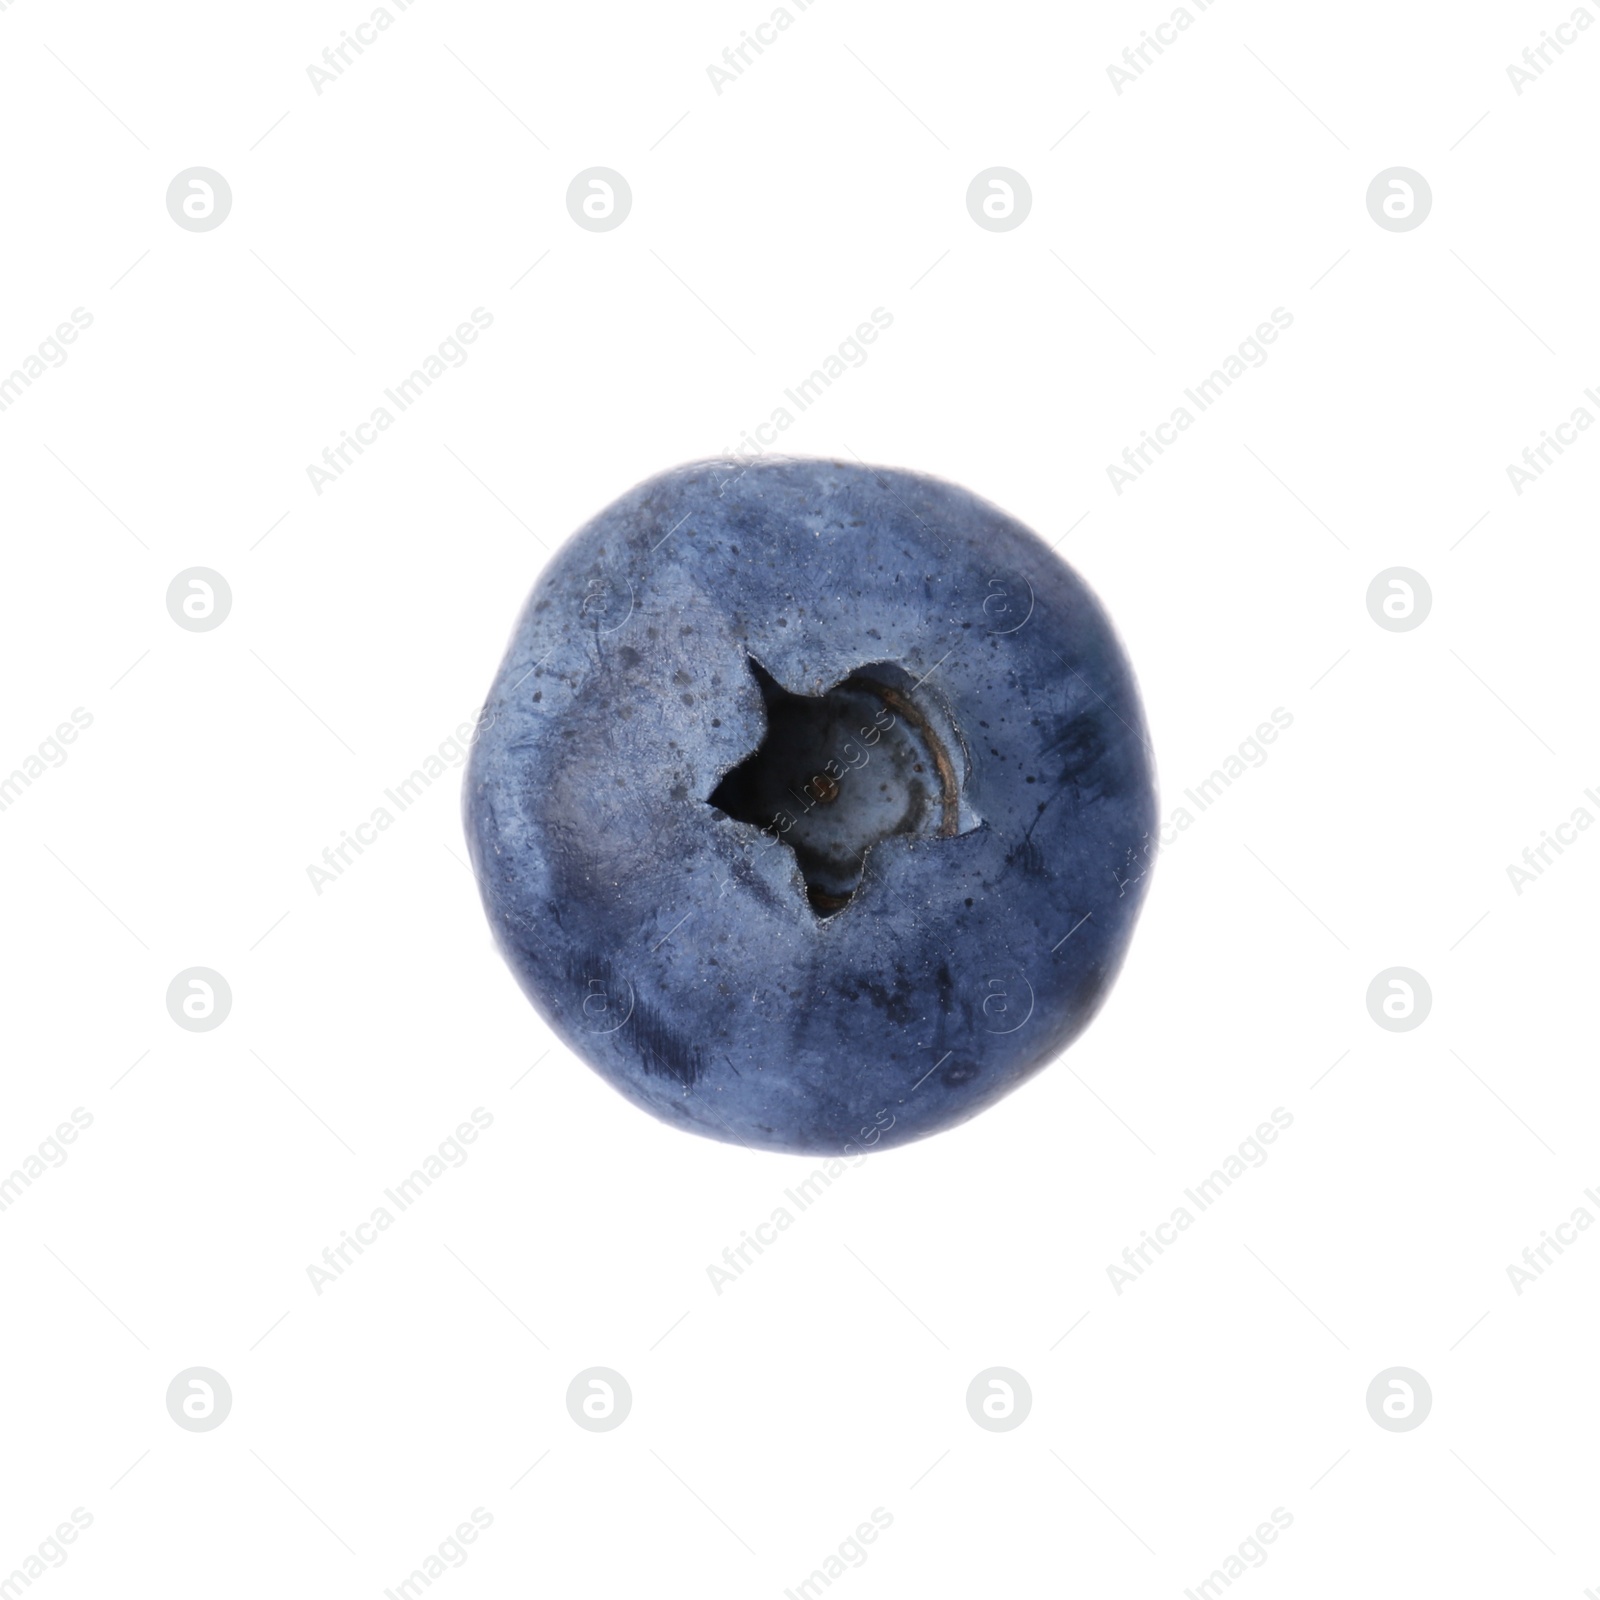 Photo of Tasty ripe fresh blueberry isolated on white